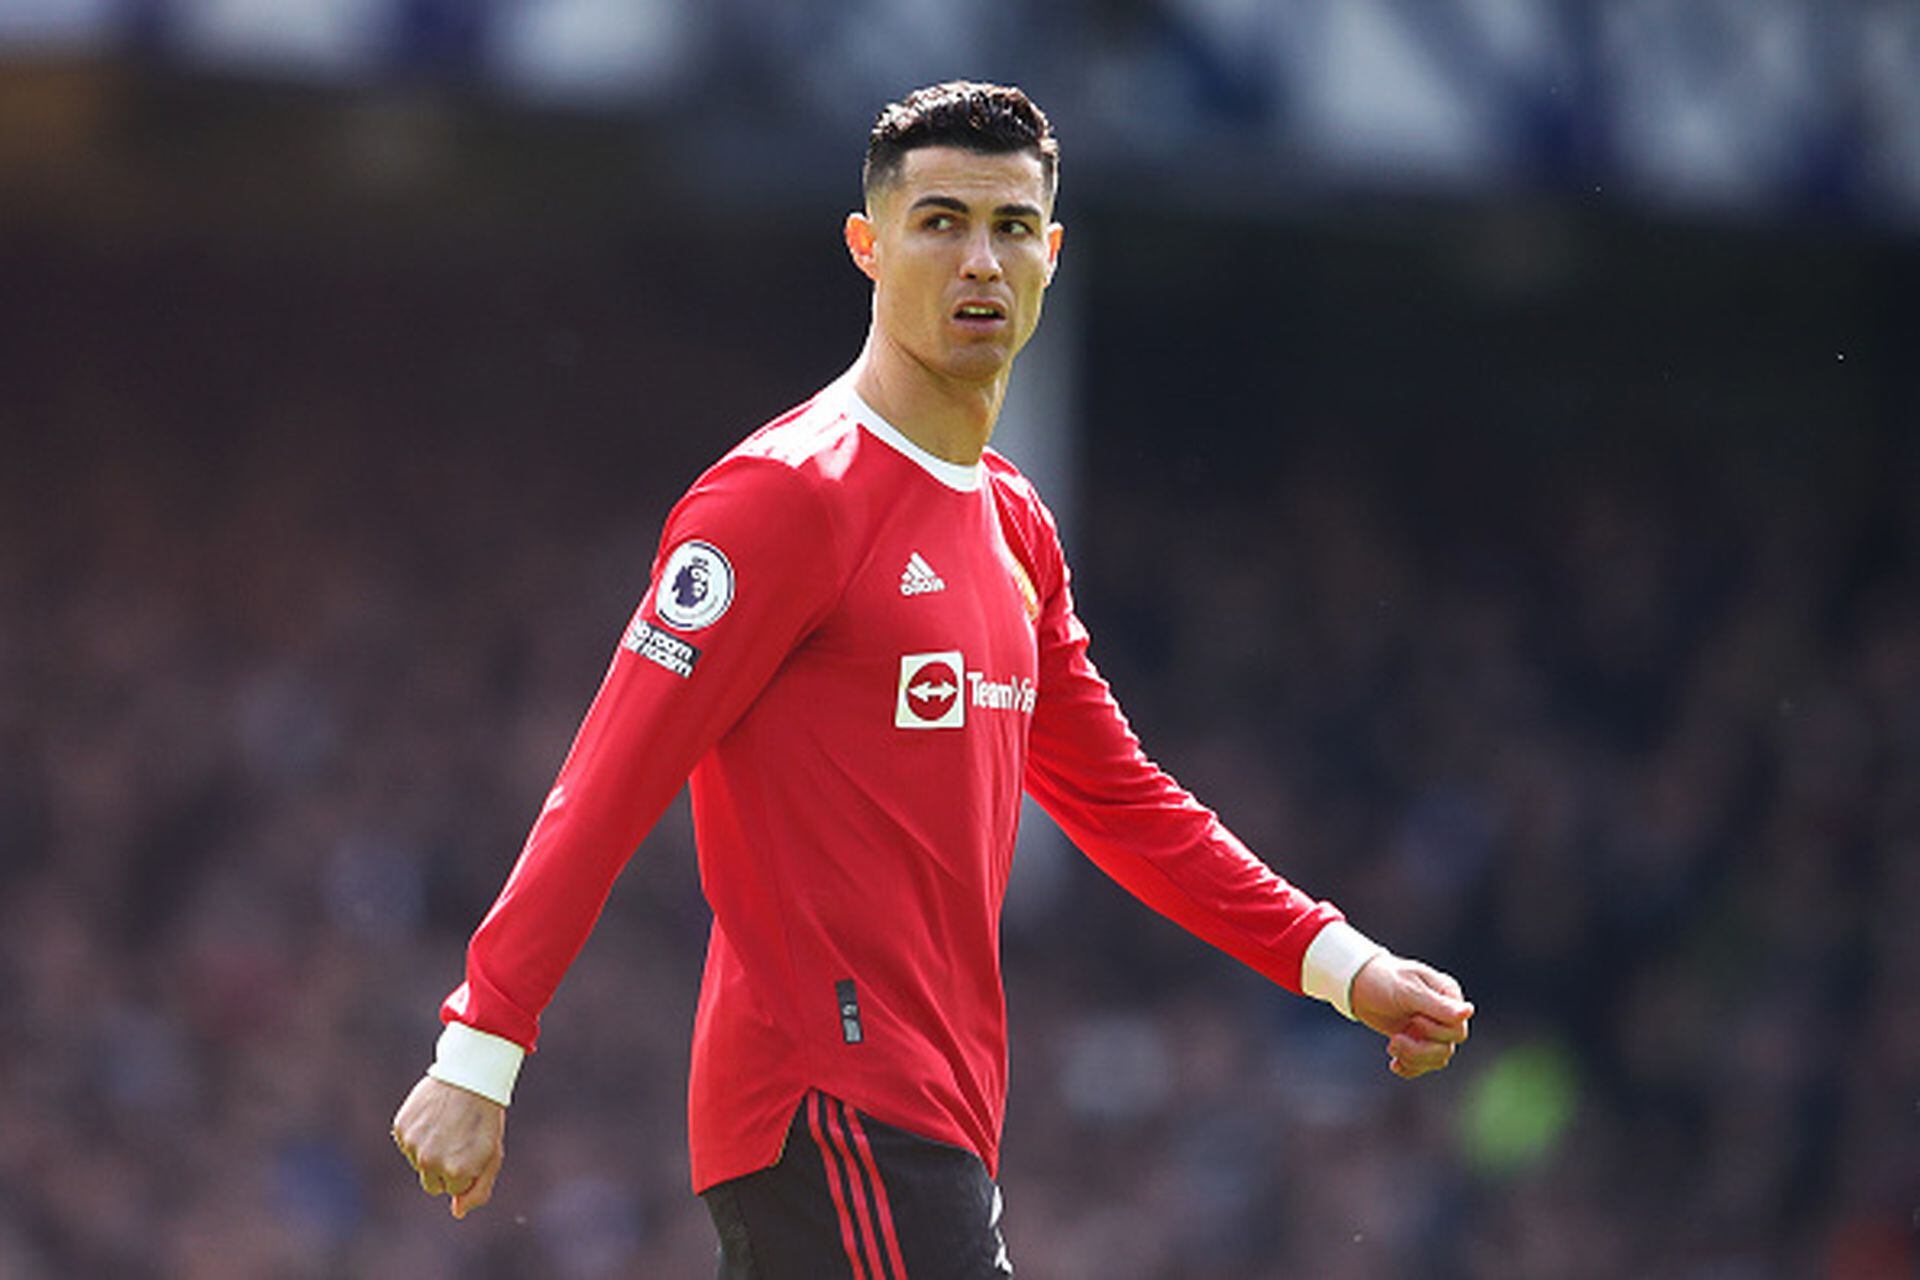 El hijo de Cristiano Ronaldo, nueva figura del Manchester United - LA NACION